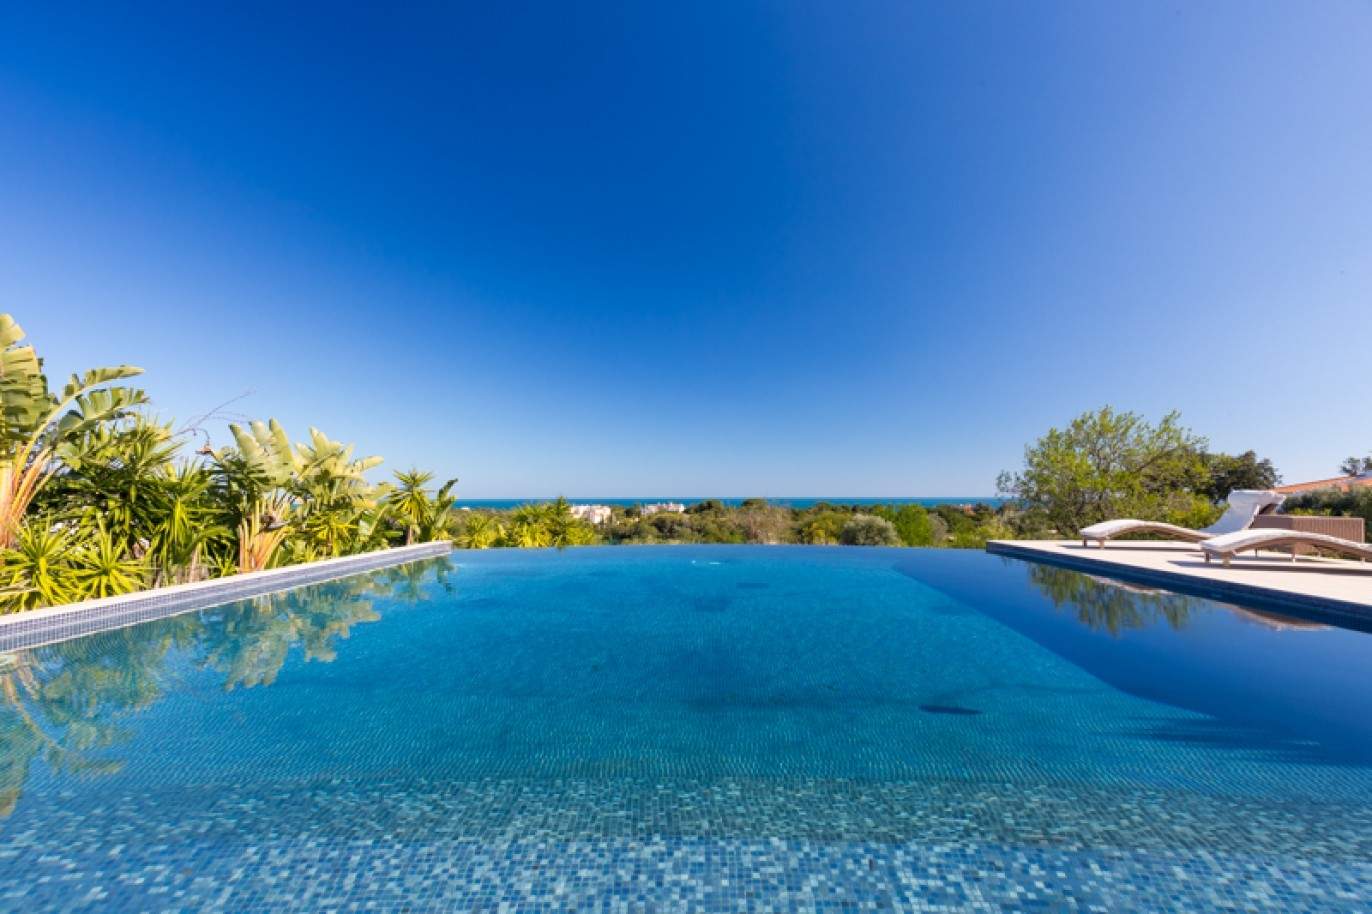 Freistehende villa zum Verkauf mit Meerblick, in der Nähe von Strand und golf, Carvoeiro, Algarve, Portugal_76406